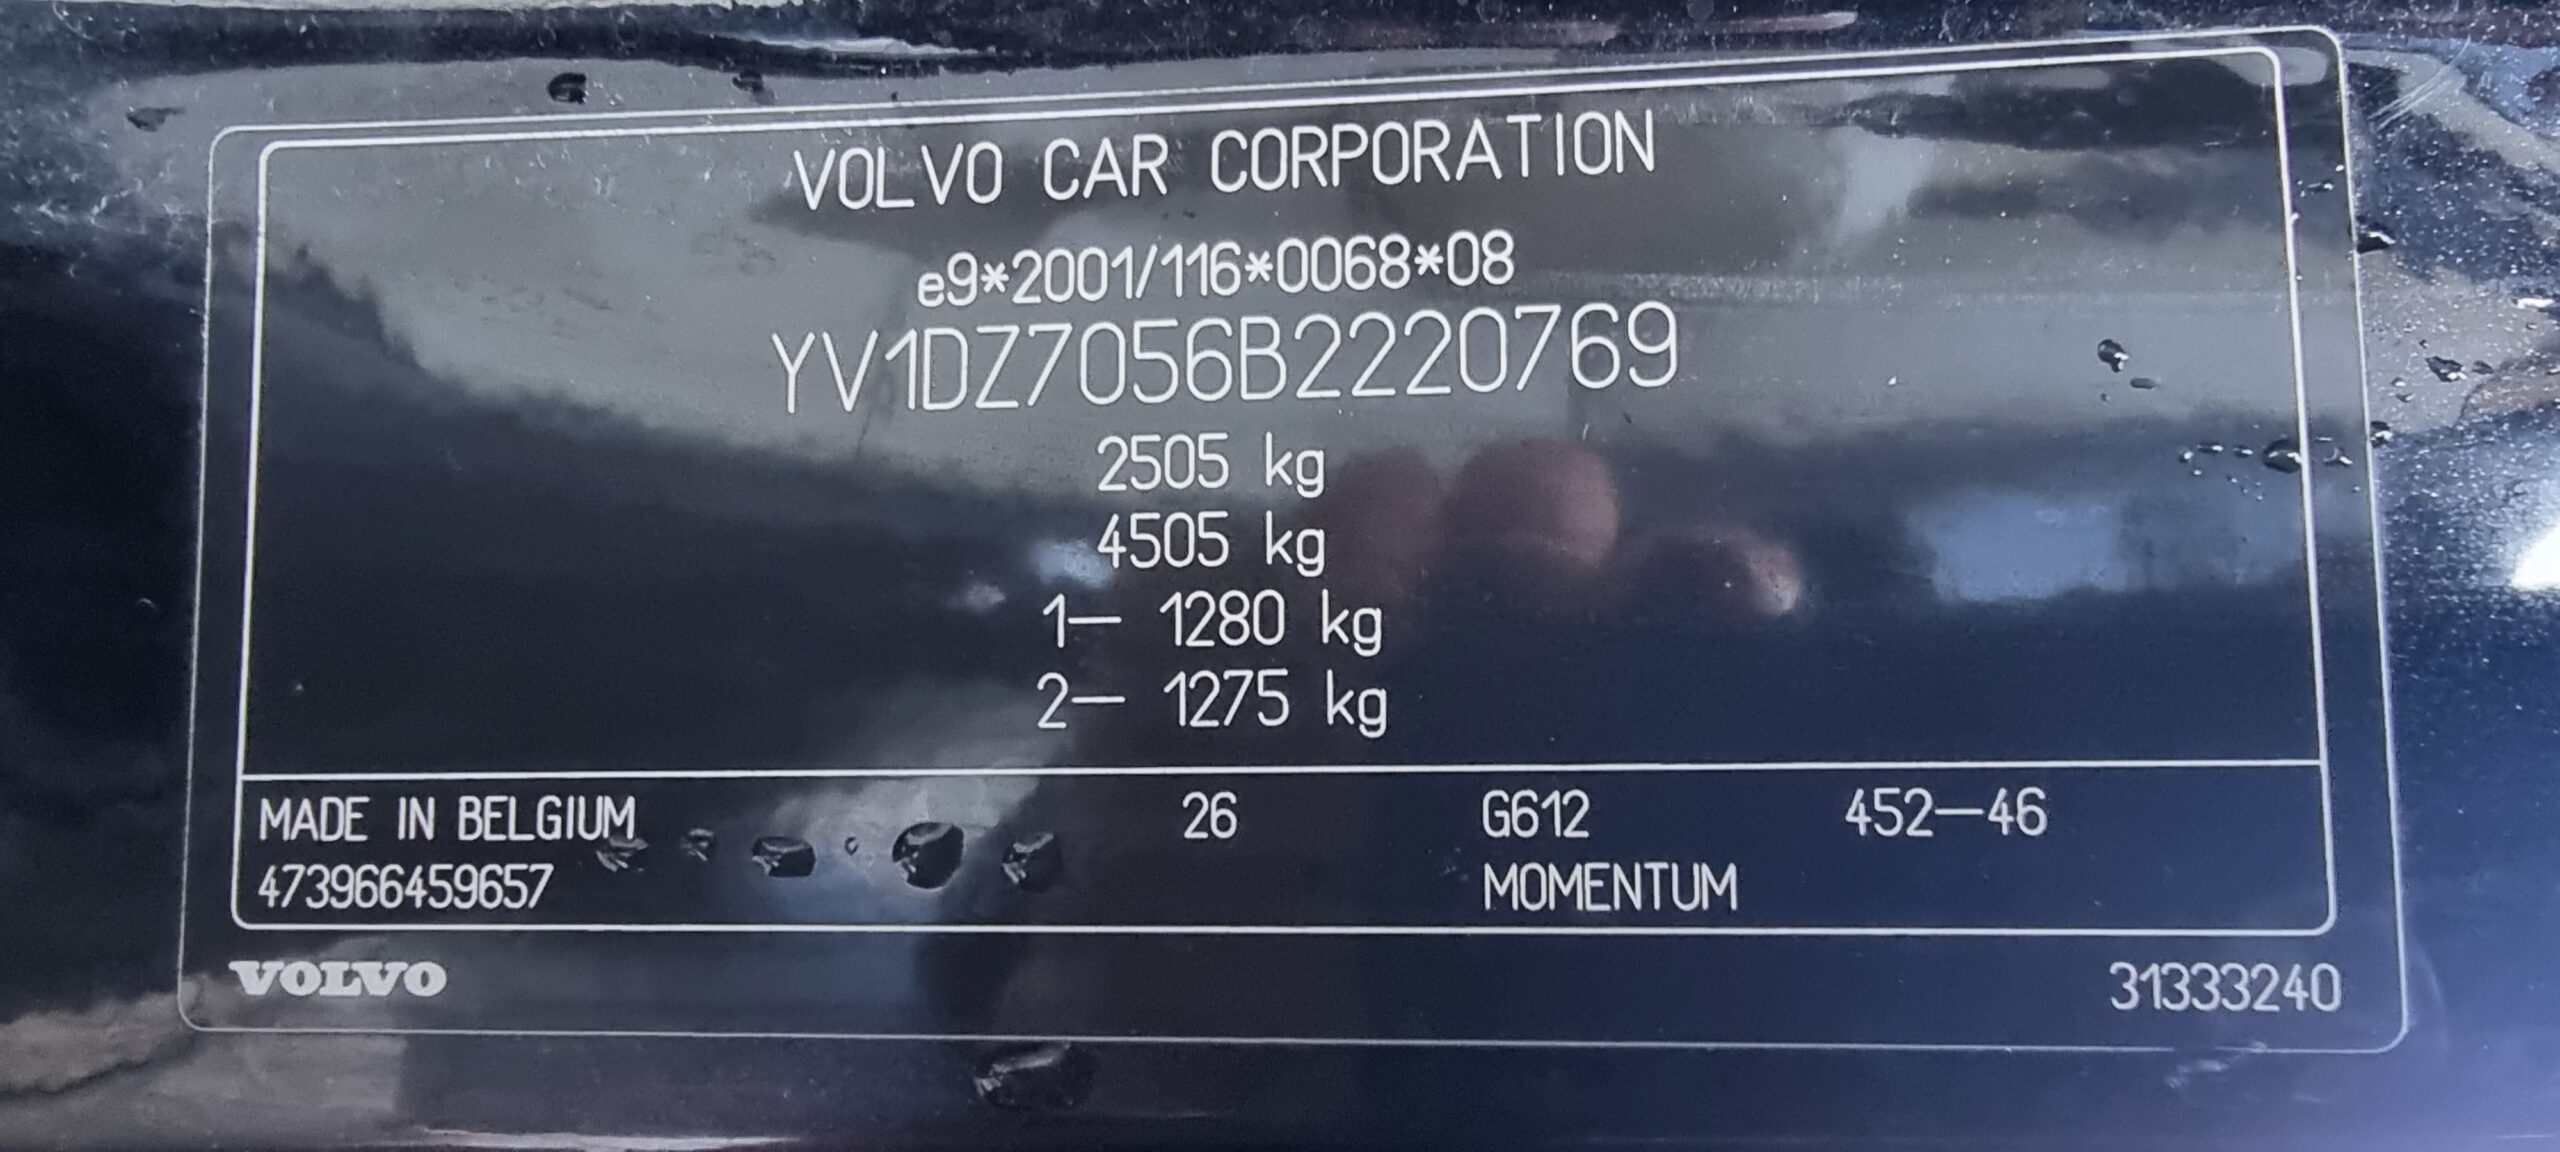 VOLVO XC 60 D5 AWD, 2.4 DIESEL, 205 CP, EURO 5, AN 2011